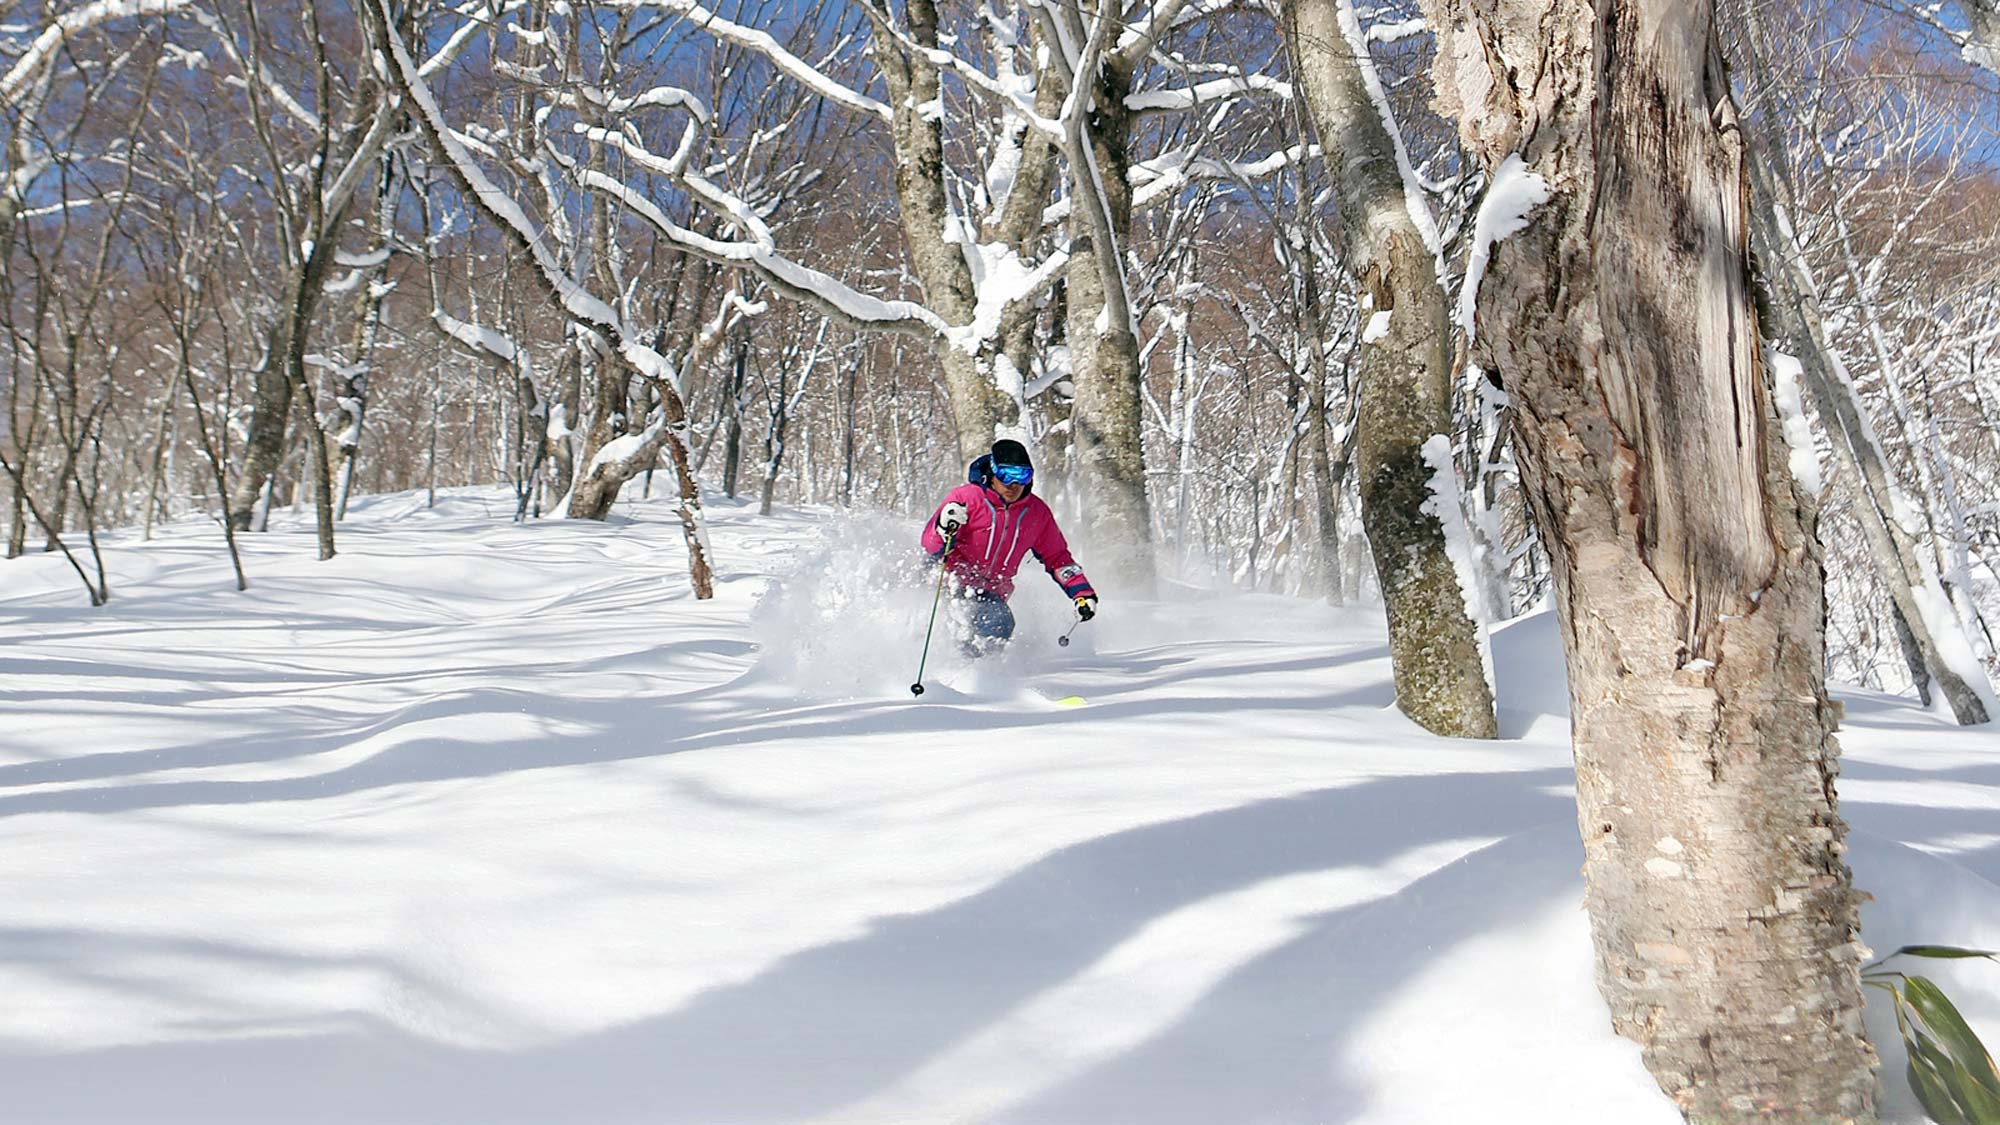 【下倉スキー場】全14コースものコースが設備されており、自分に合ったスキーを楽しむことができます。